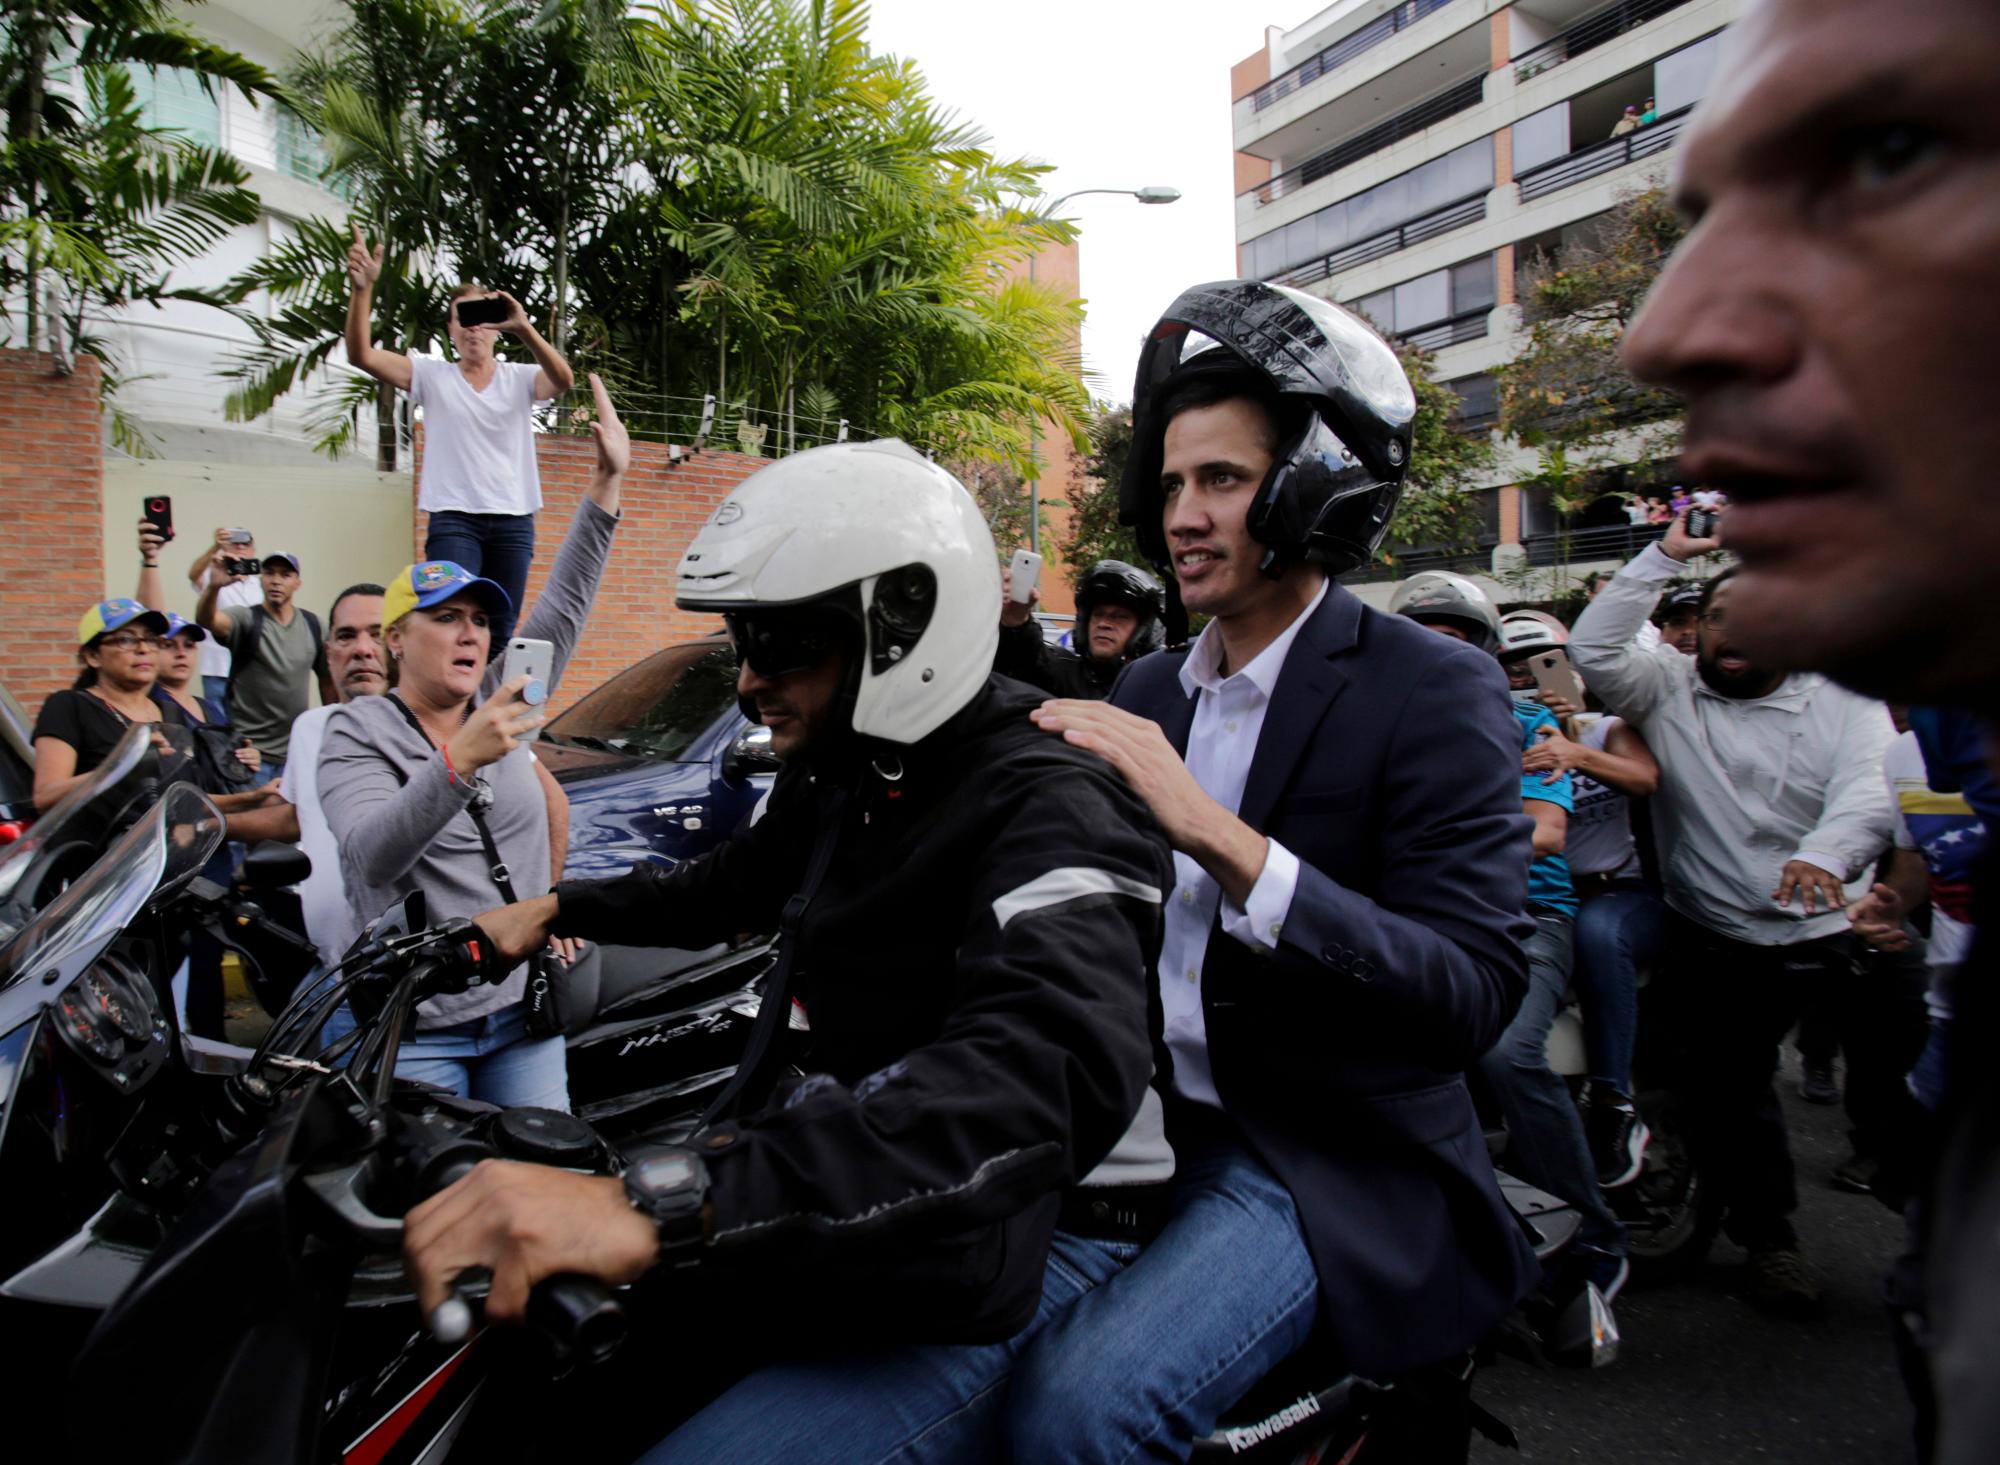 Juan Guaido, jefe del congreso de oposición dirigido por Venezuela, monta en la parte trasera de una motocicleta mientras saluda a sus partidarios luego de declararse presidente interino del país sudamericano en un mitin exigiendo la renuncia del presidente Nicolás Maduro, en Caracas, Venezuela, el miércoles 23 de enero de 2019.